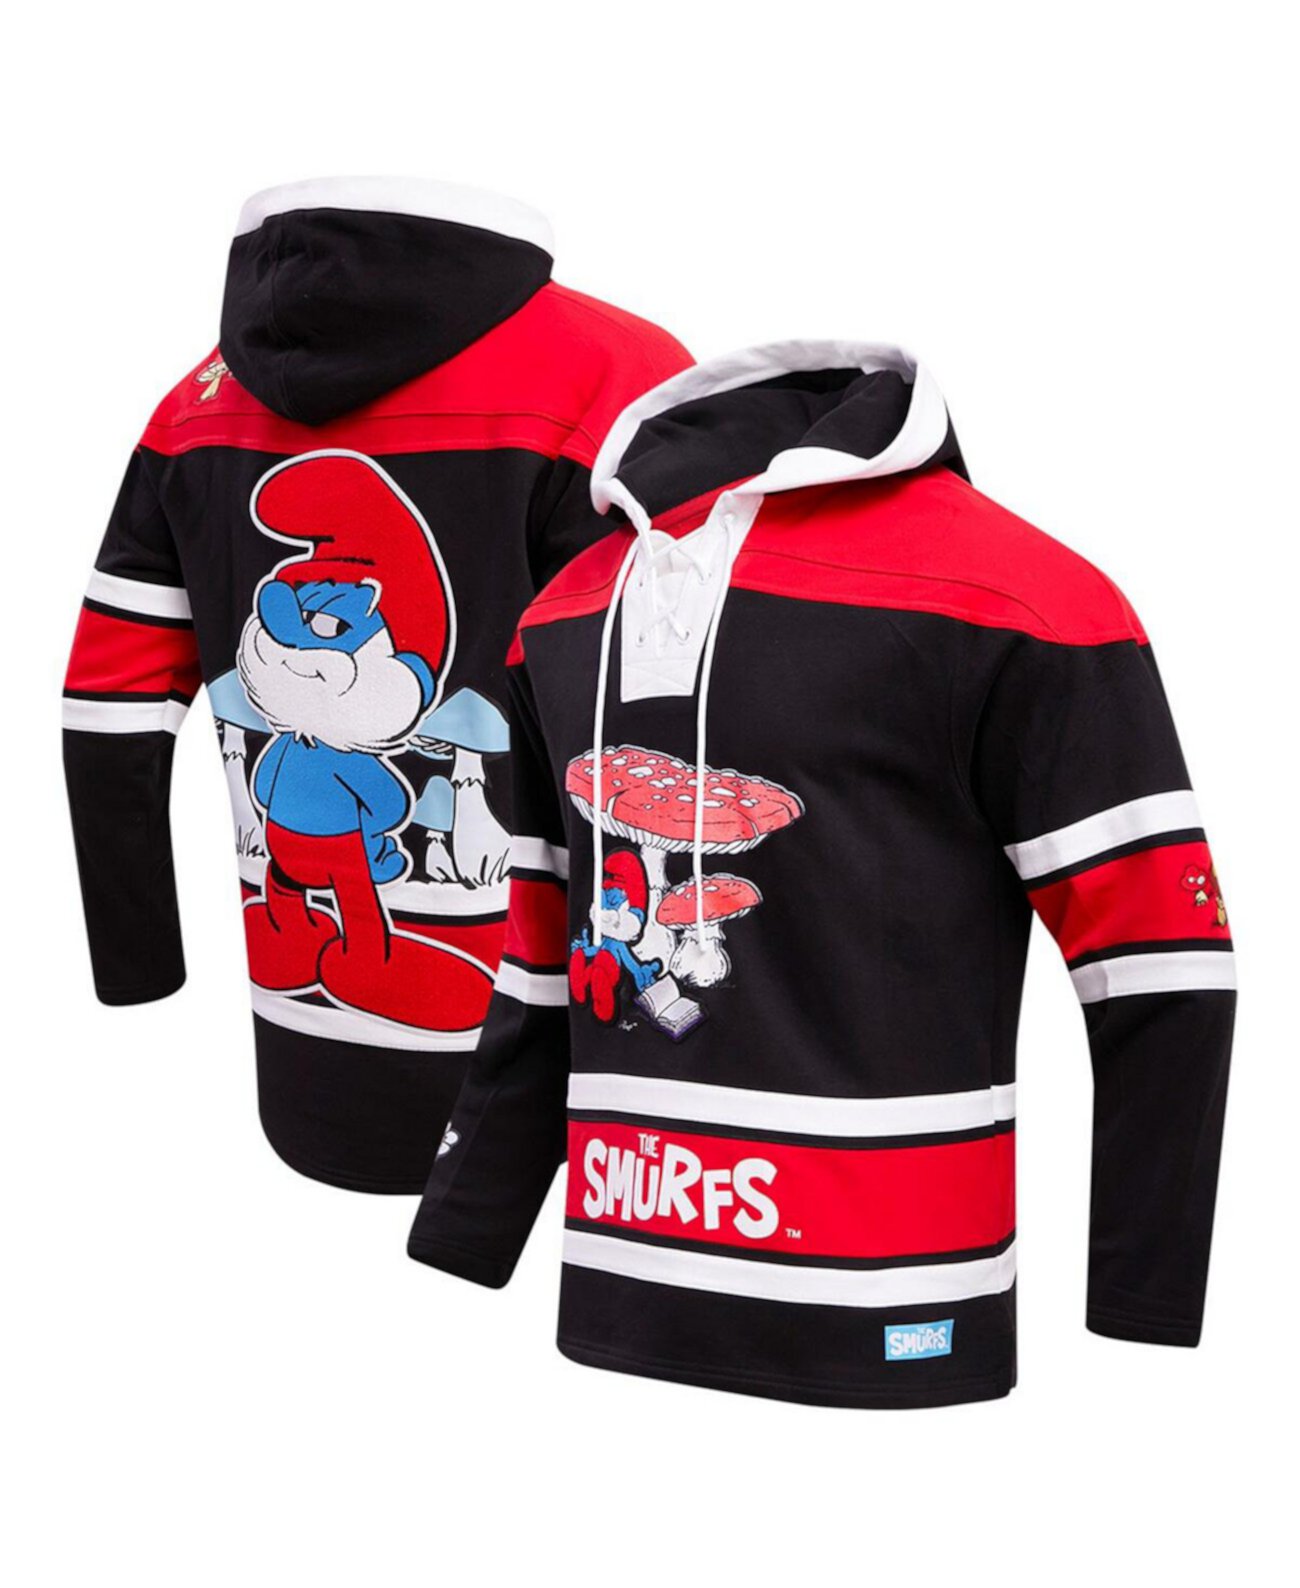 Мужской черный хоккейный пуловер с капюшоном The Smurfs Freeze Max